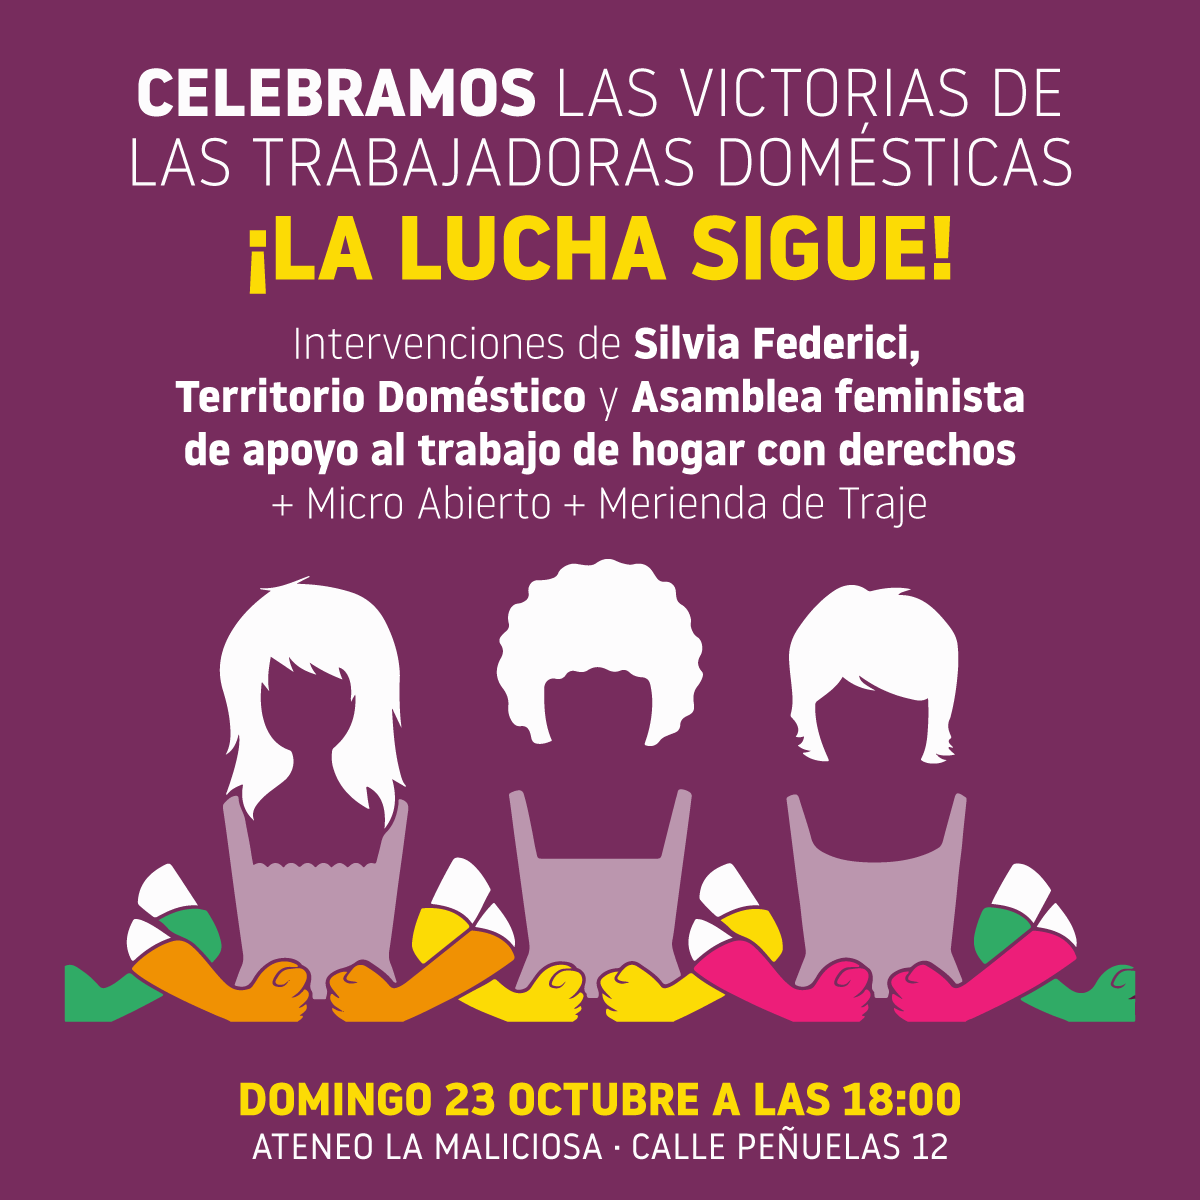 Celebramos las victorias de las trabajadoras domésticas, ¡la lucha sigue!